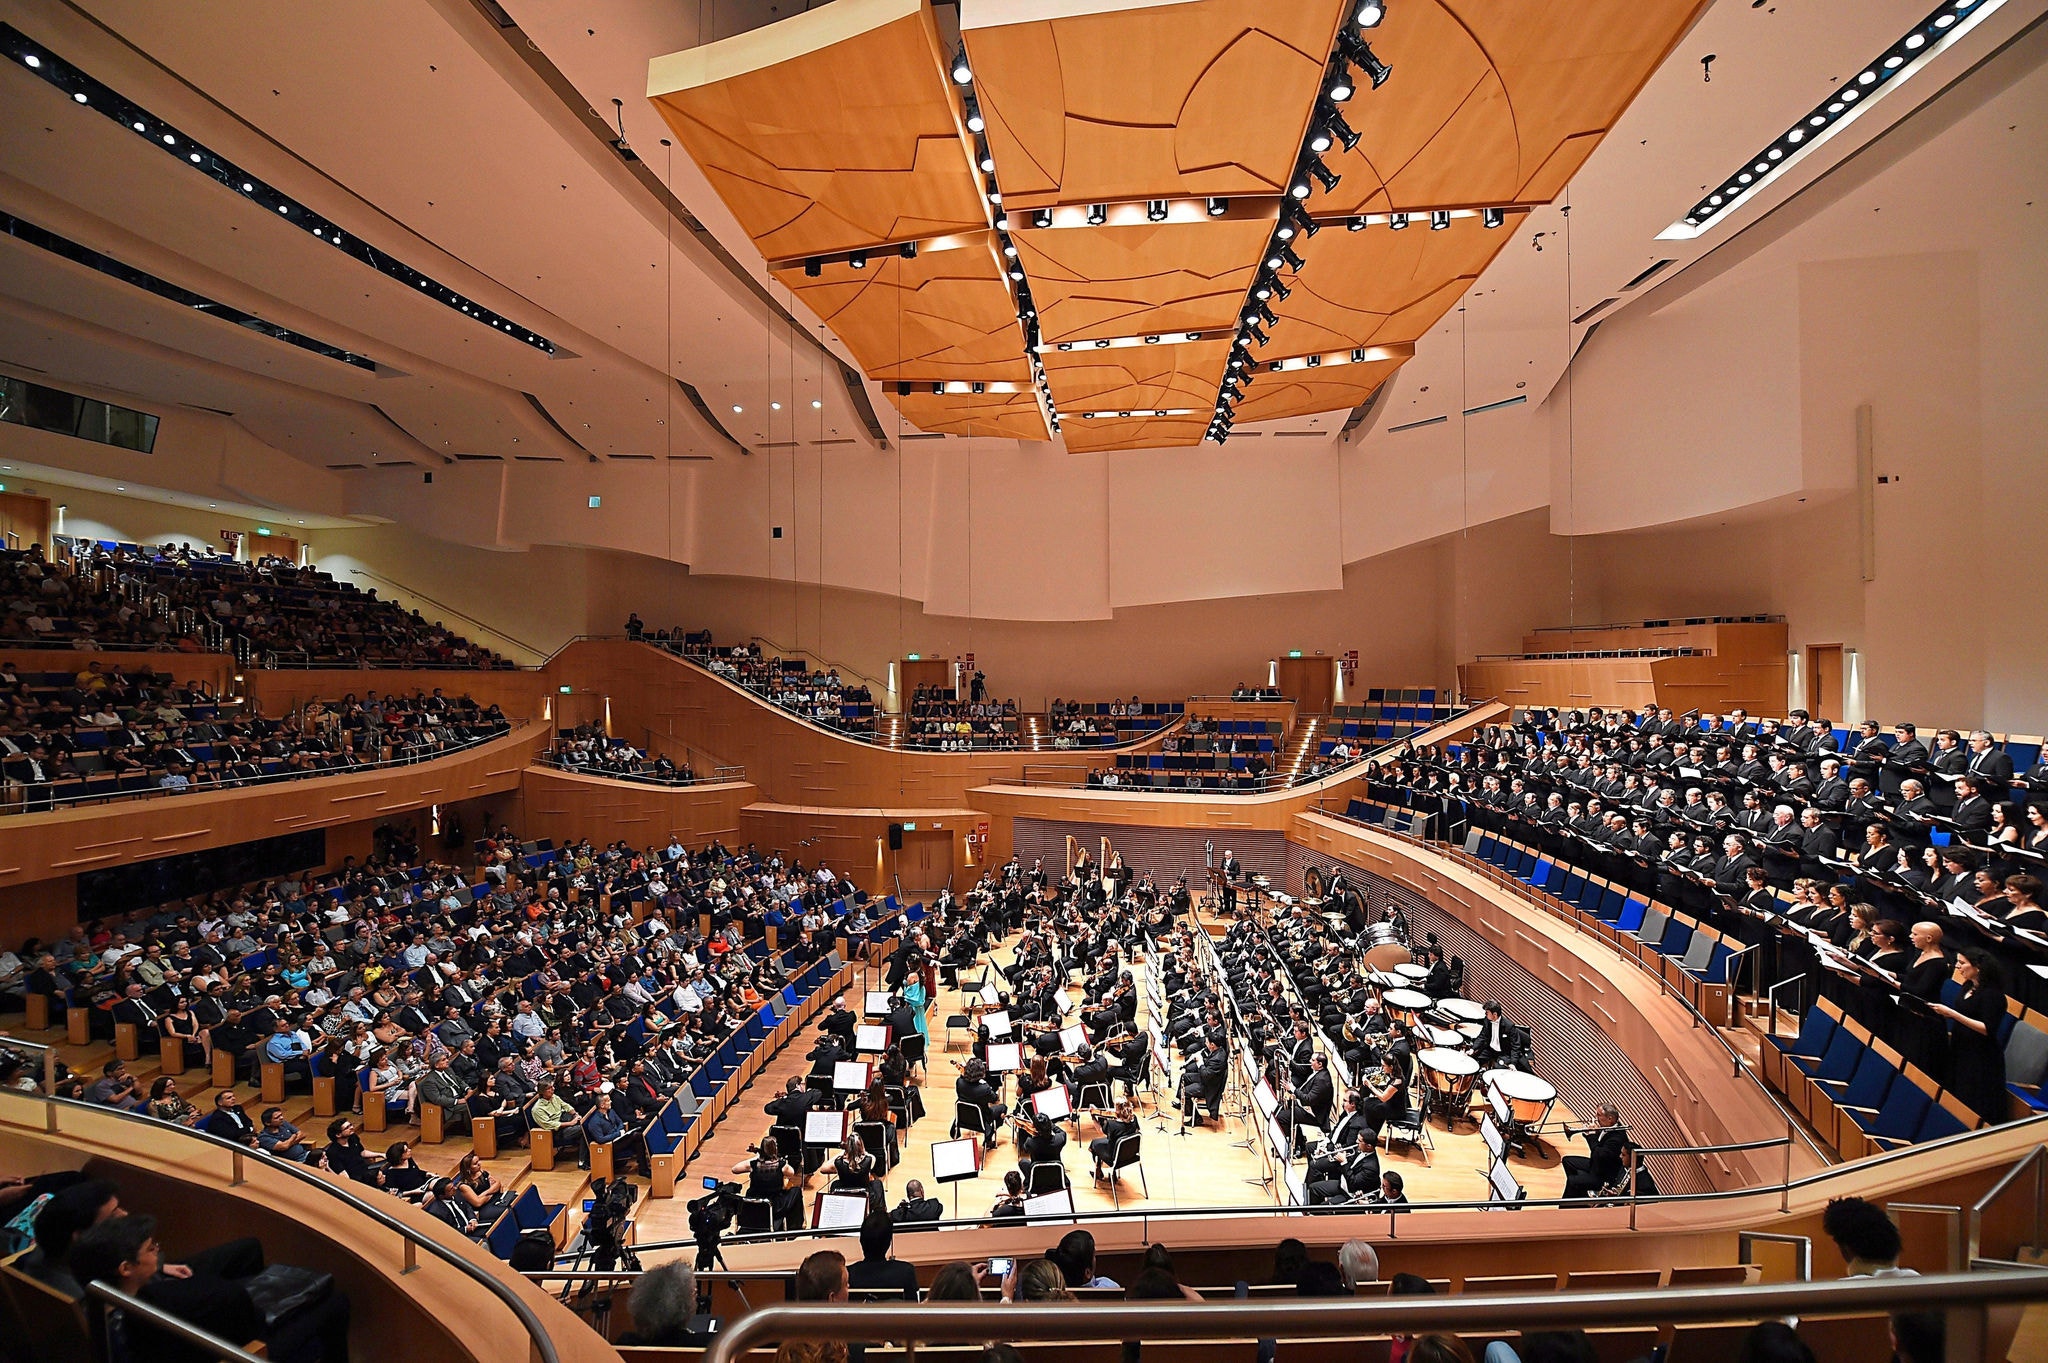 Sala Minas Gerais durante apresentação da Filarmônica